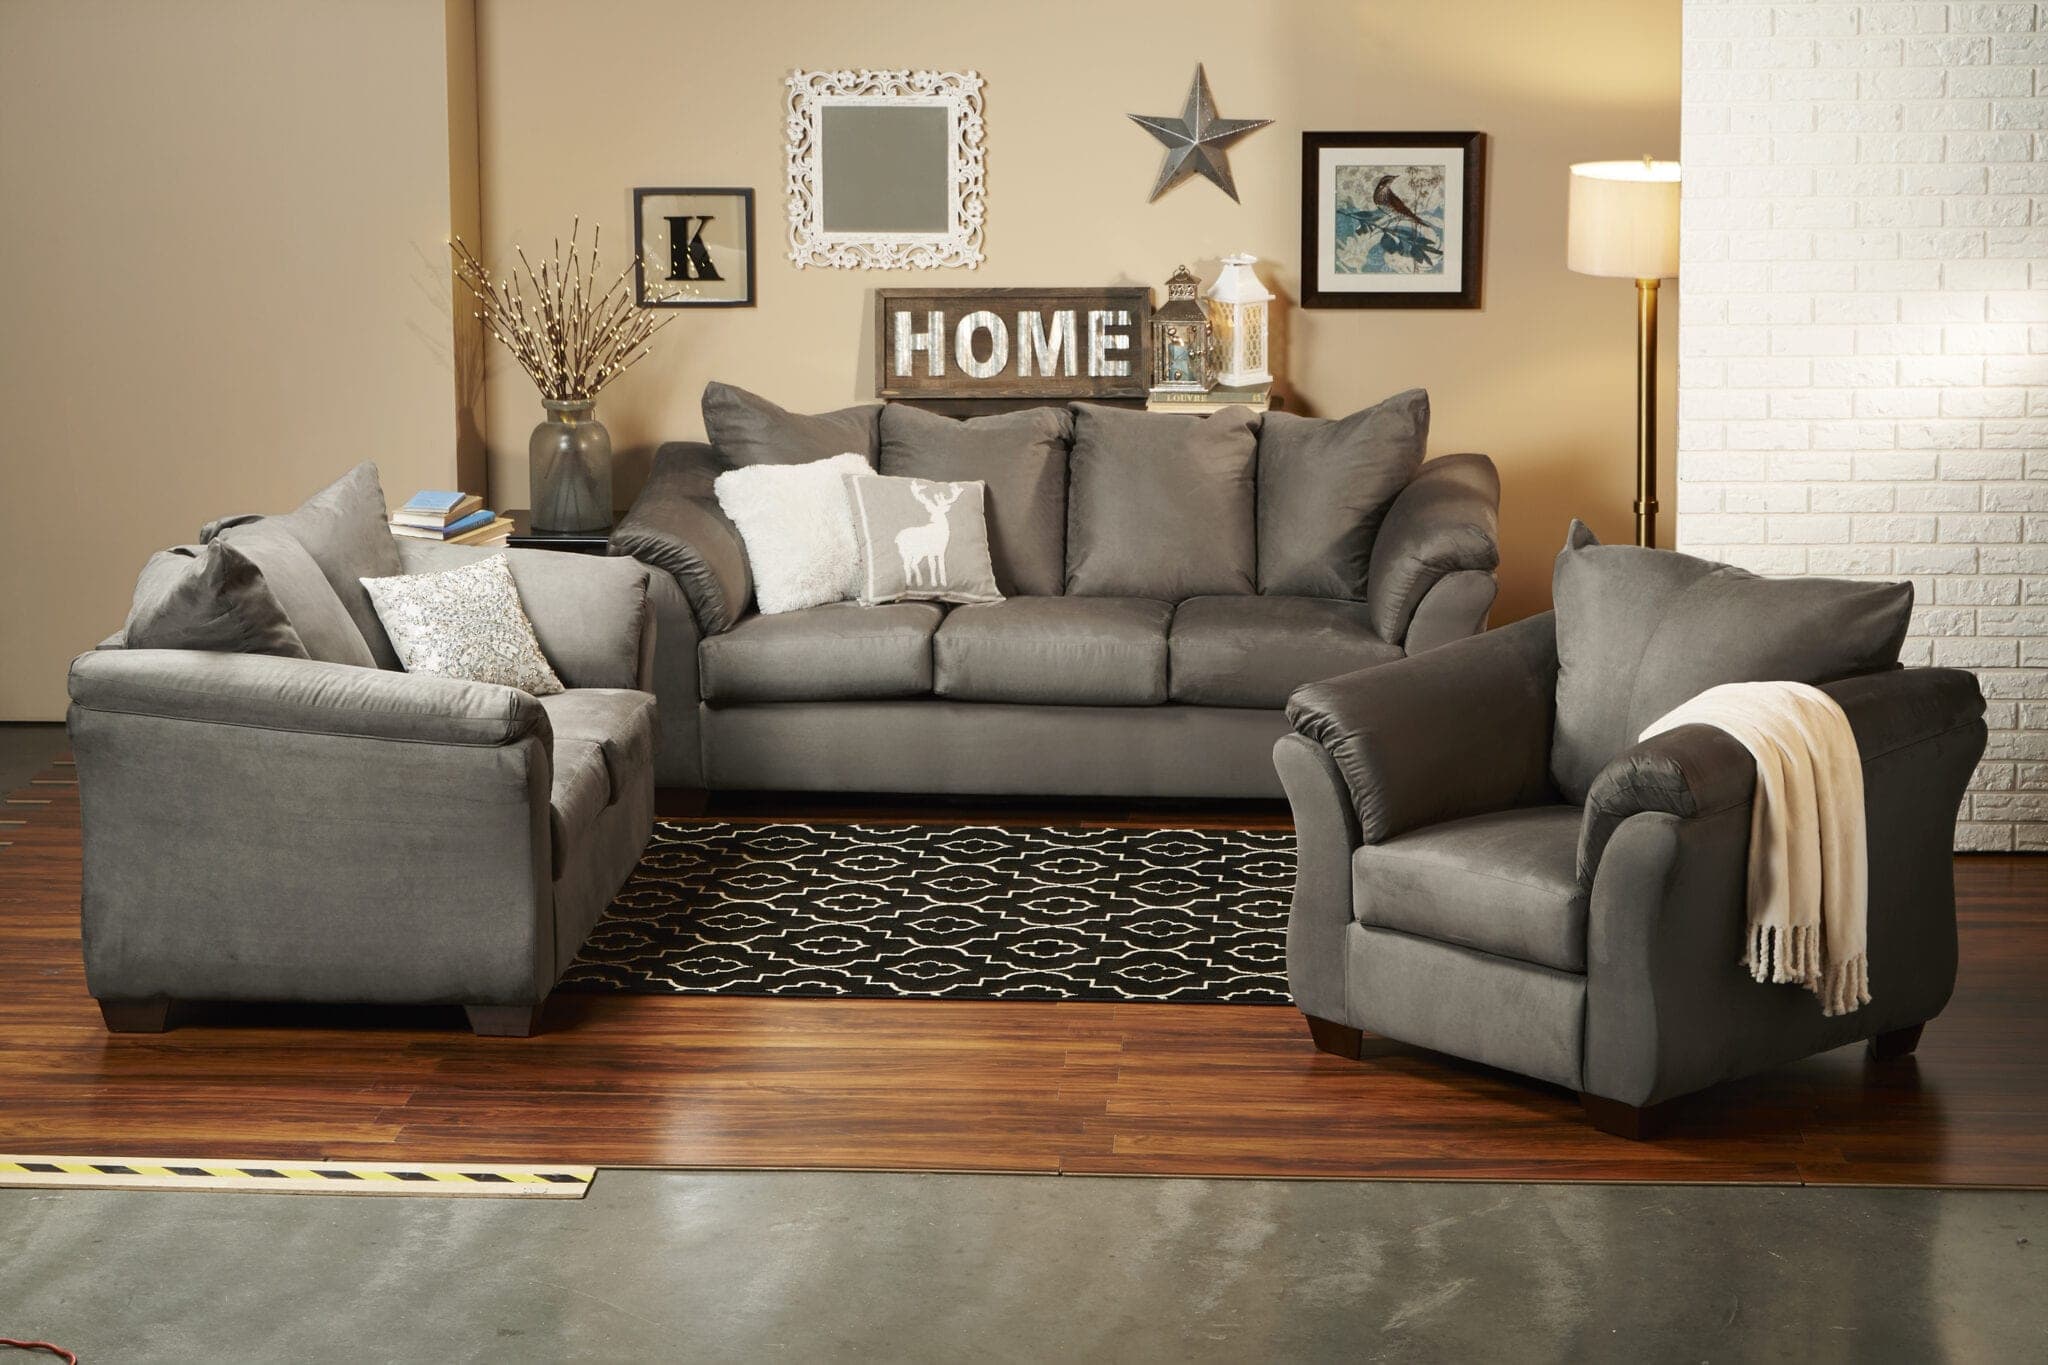 fred meyer living room furniture